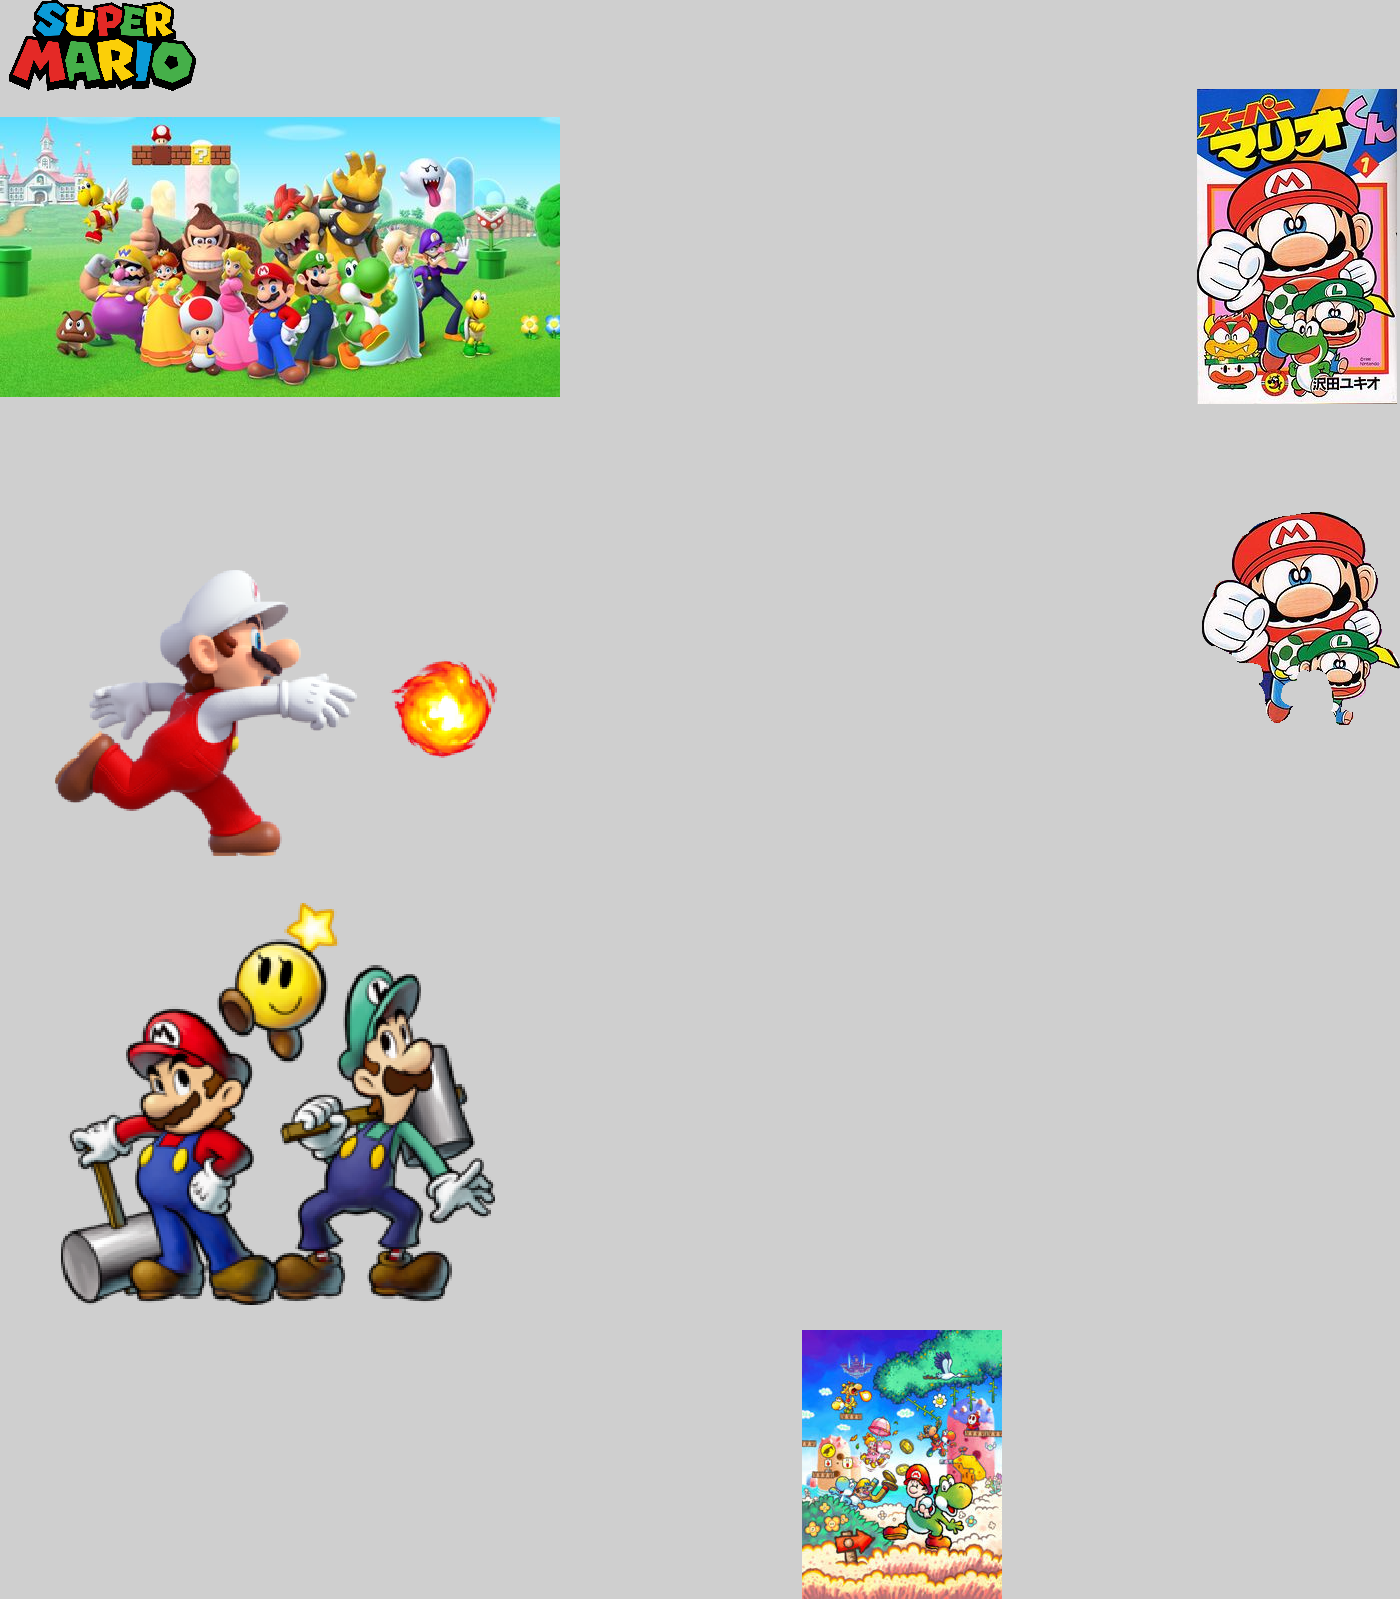 Super Mario World: Super Mario Advance 2 - Super Mario Wiki, the